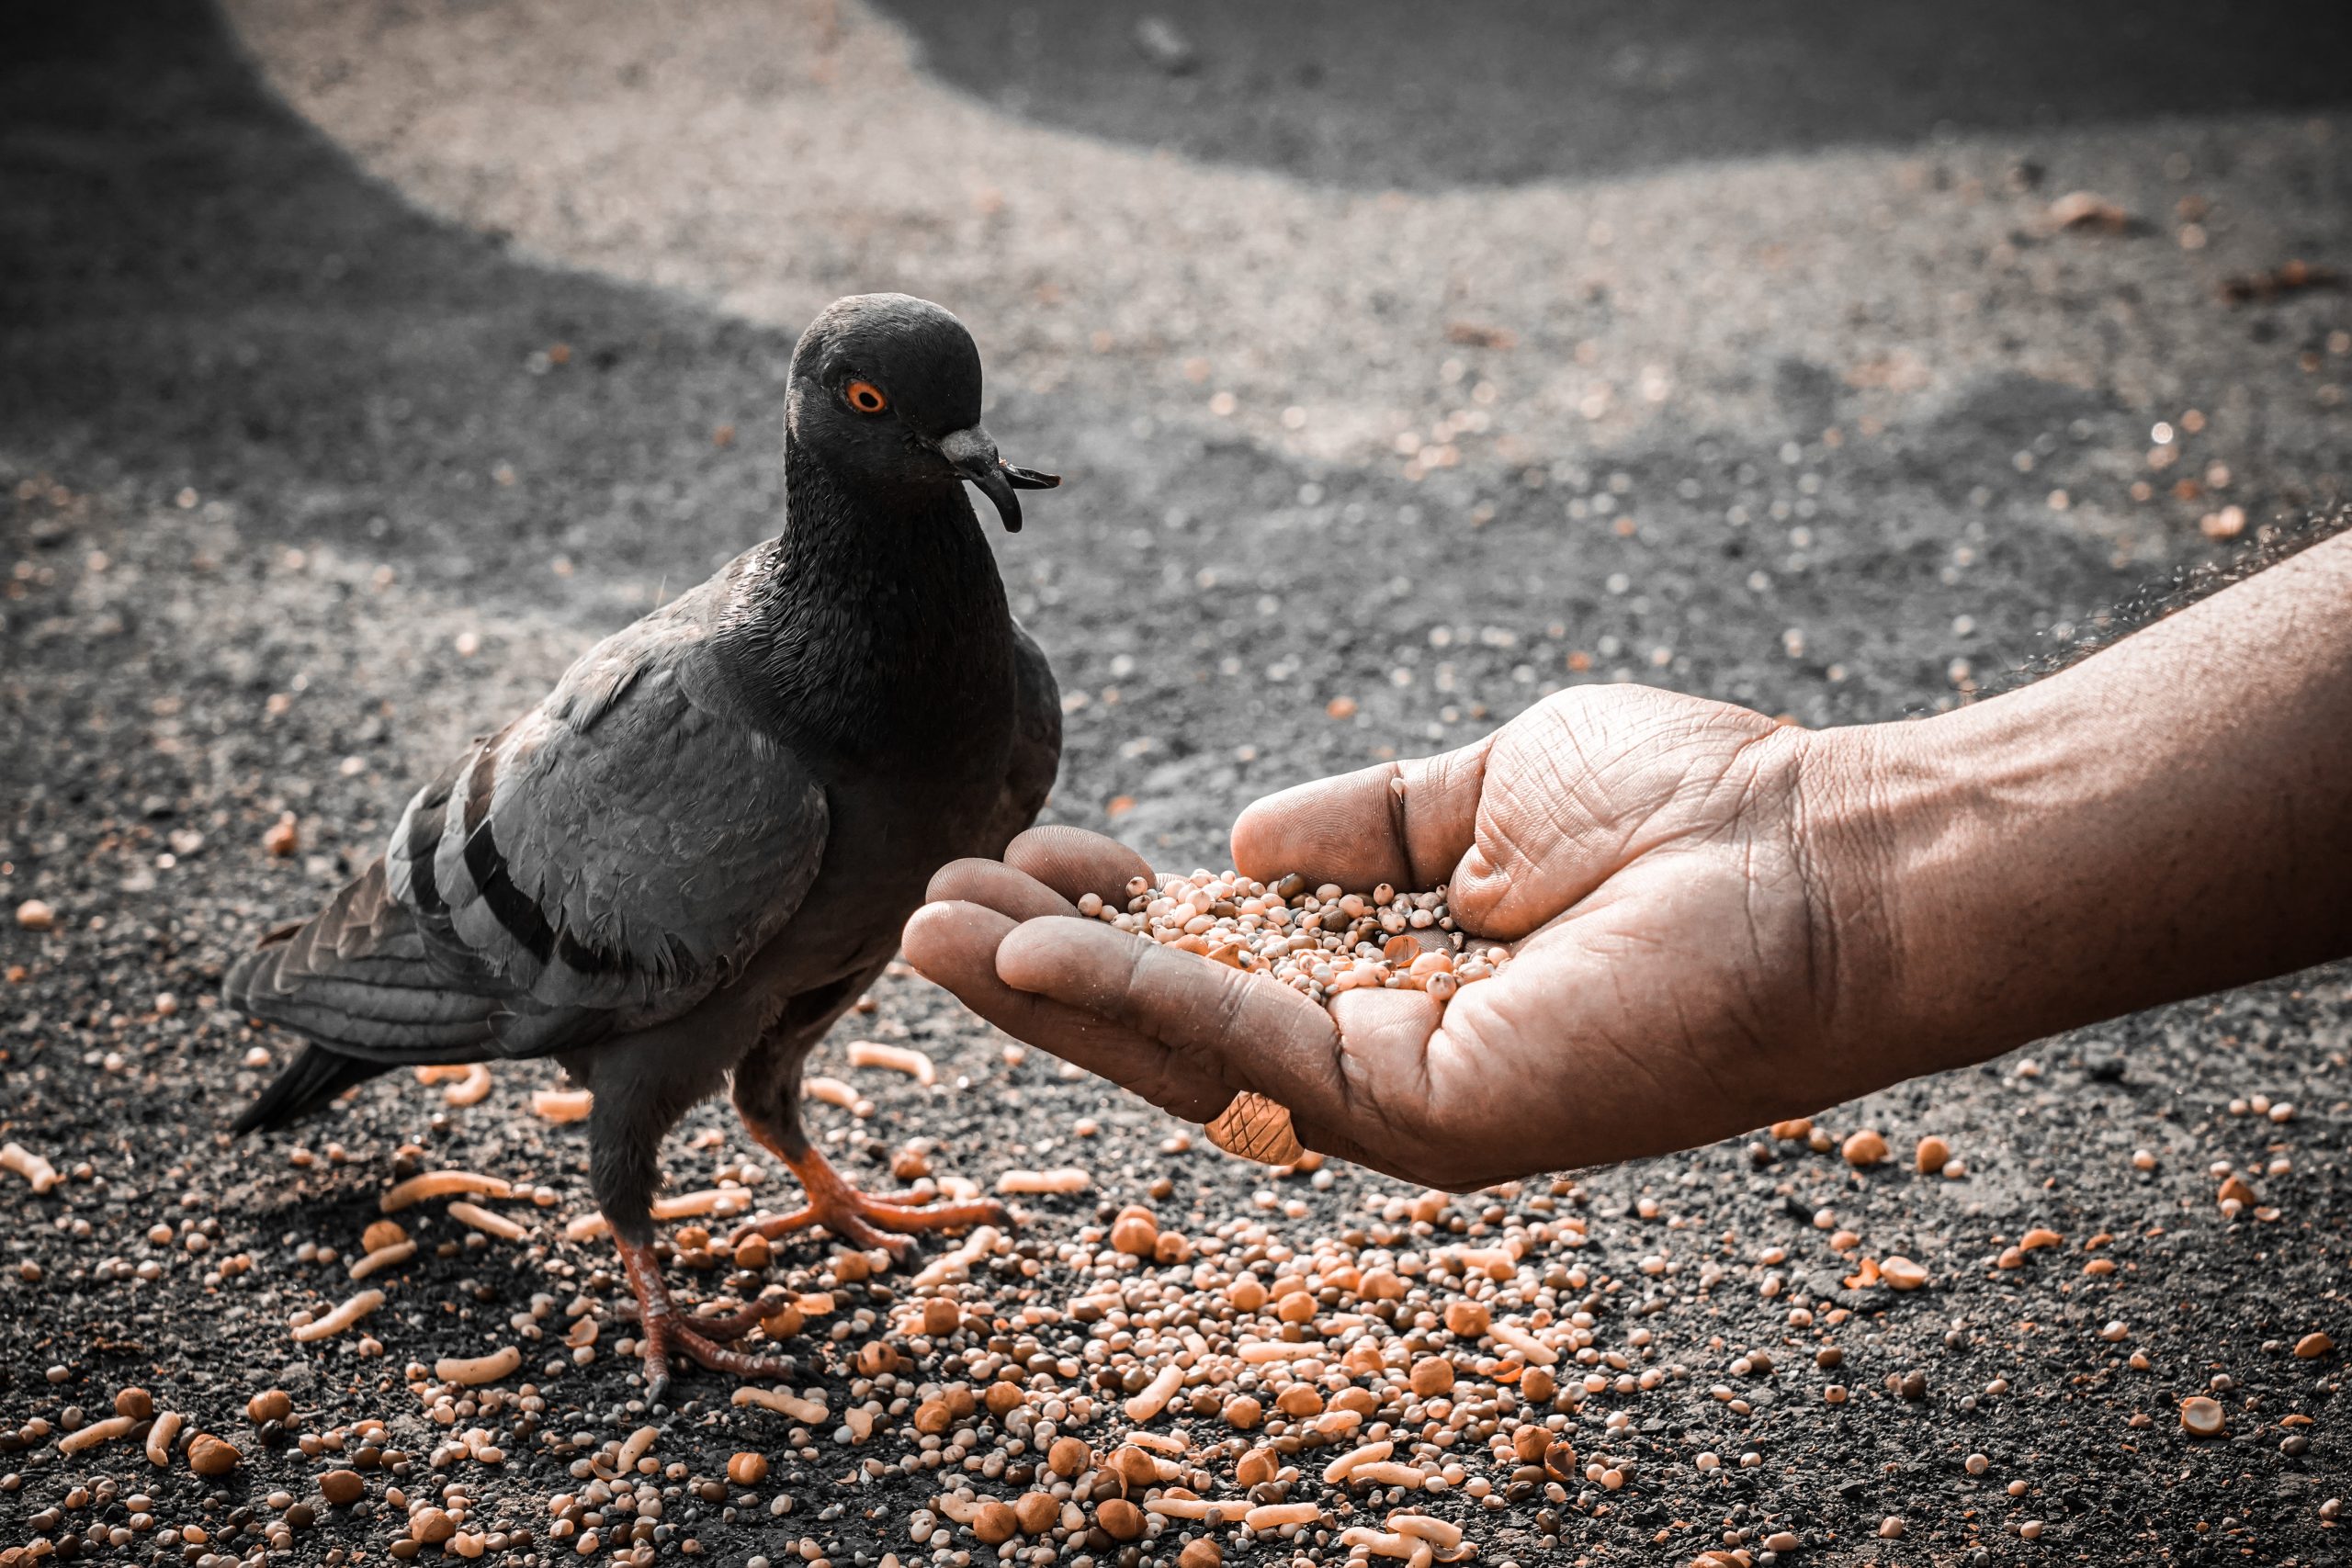 Feeding a pigeon